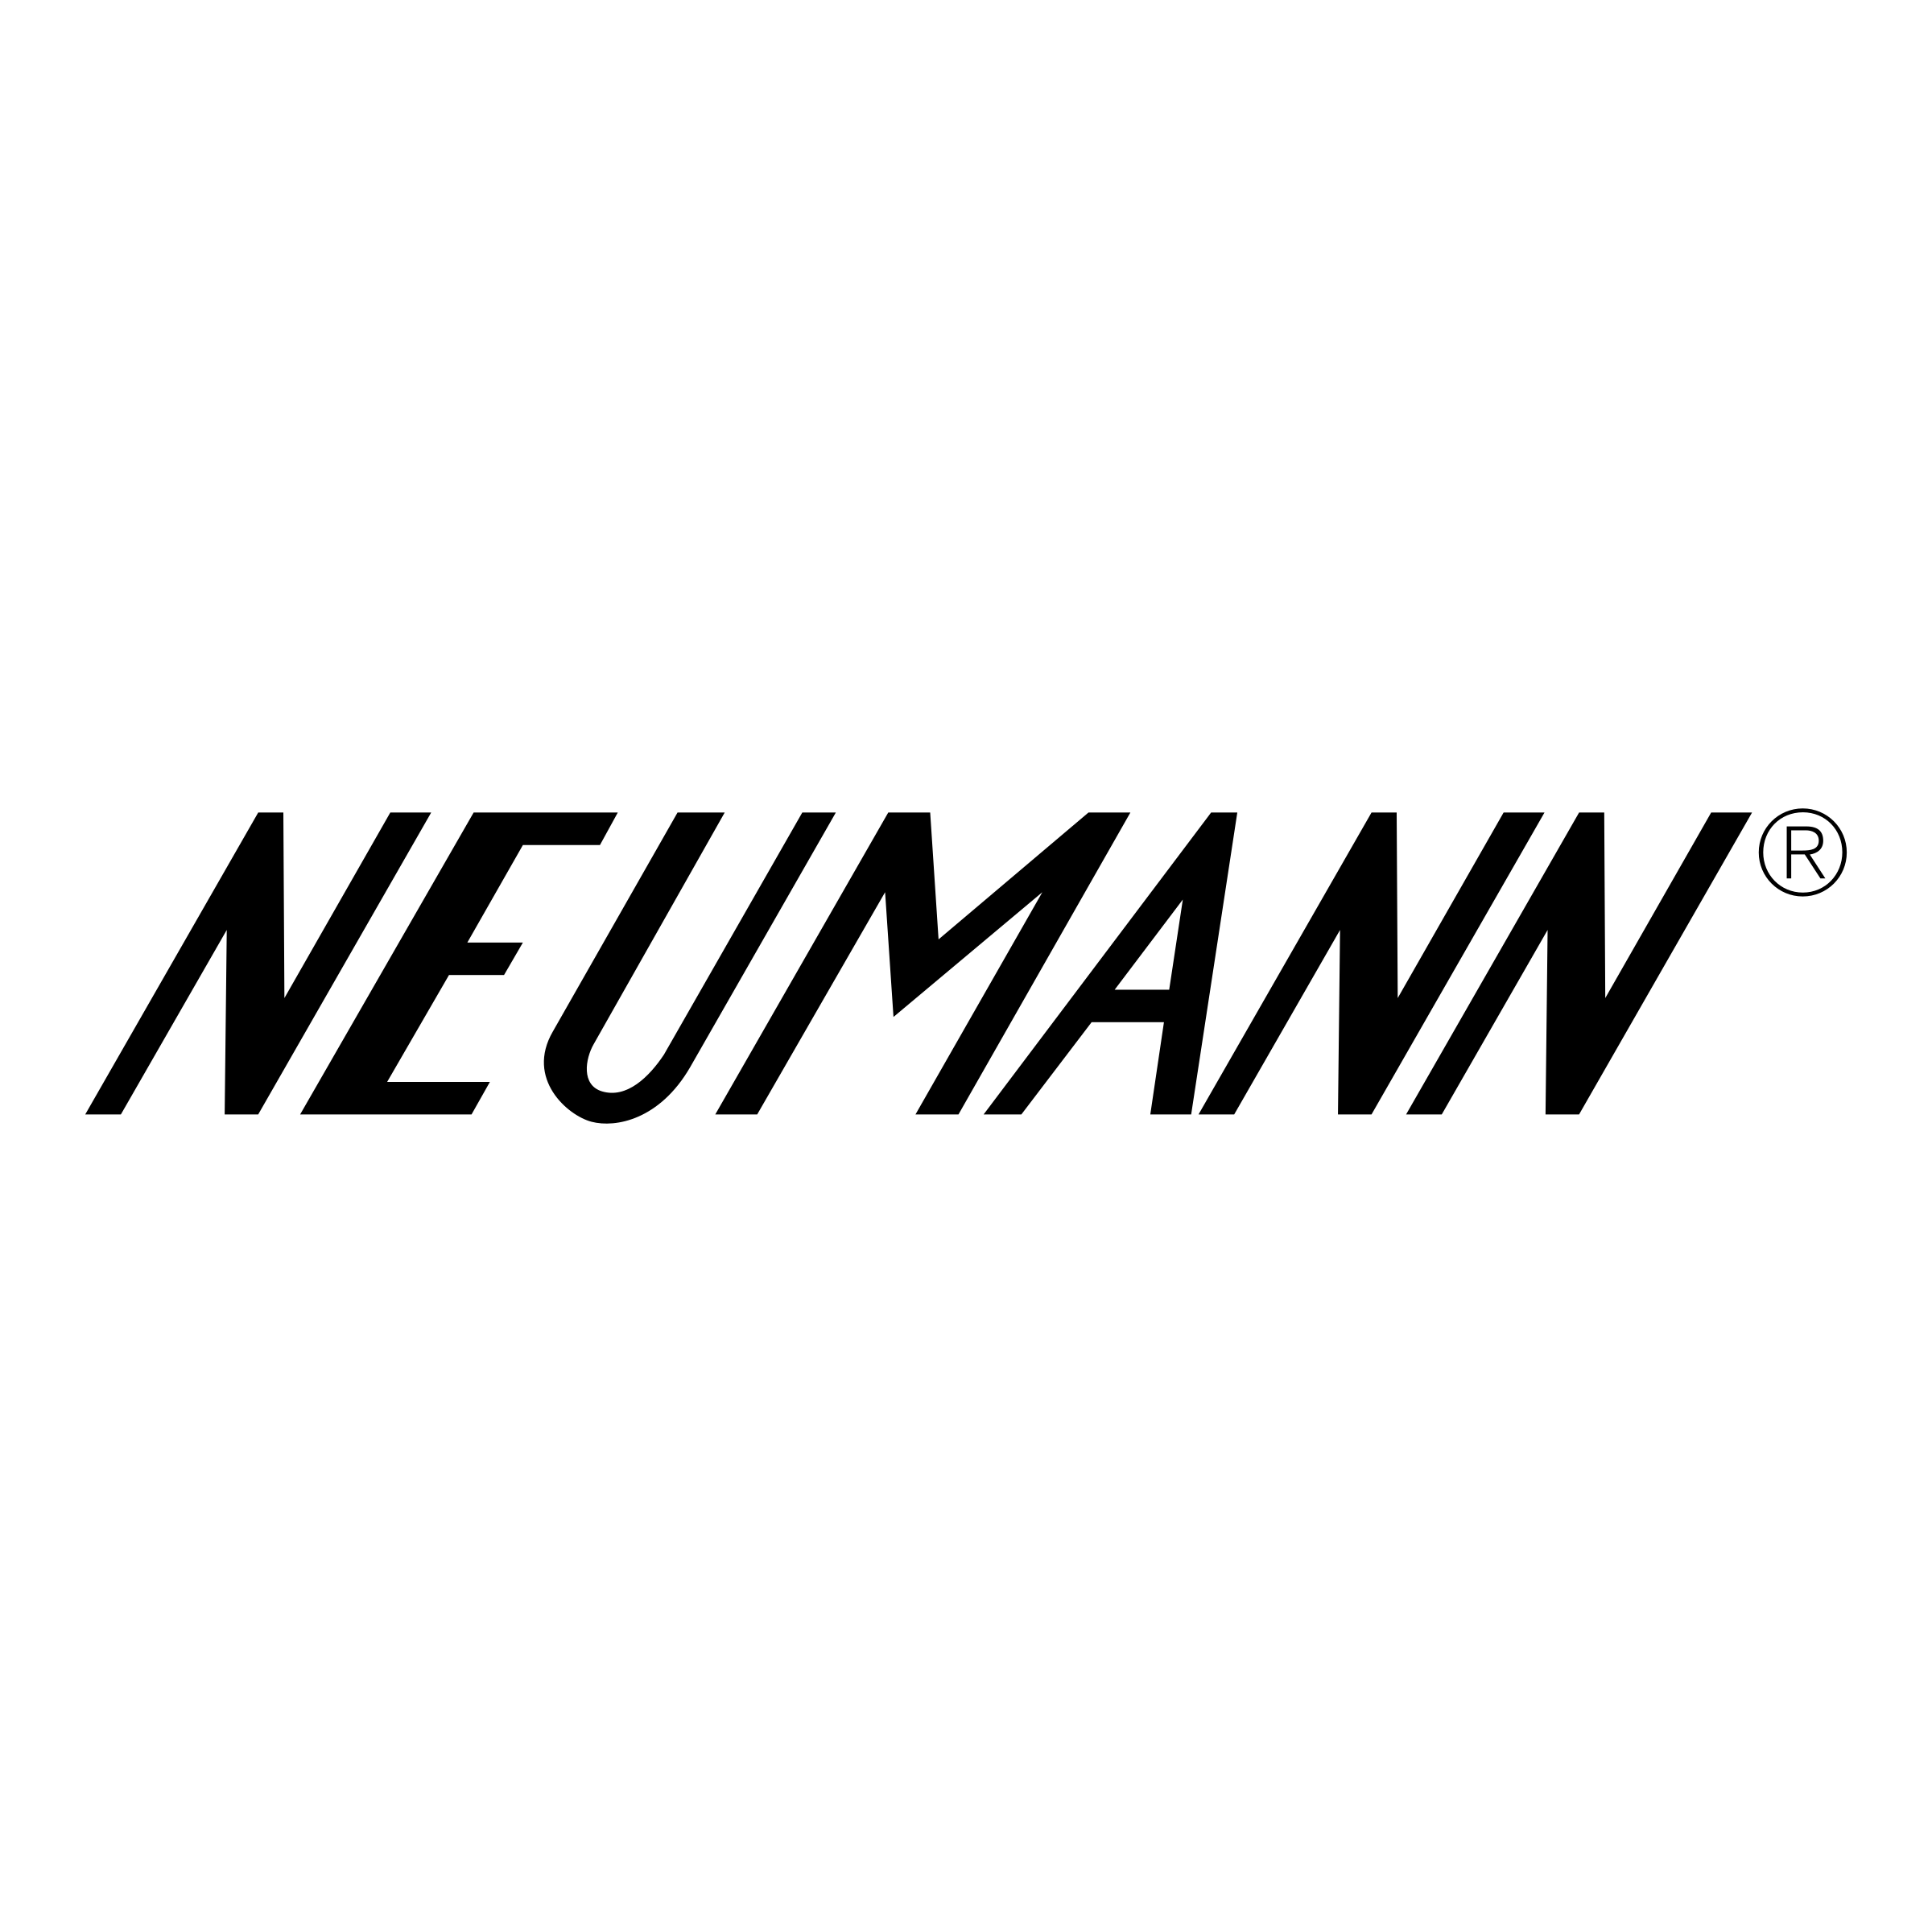 Neumann Logo - Neumann Logo PNG Transparent & SVG Vector - Freebie Supply